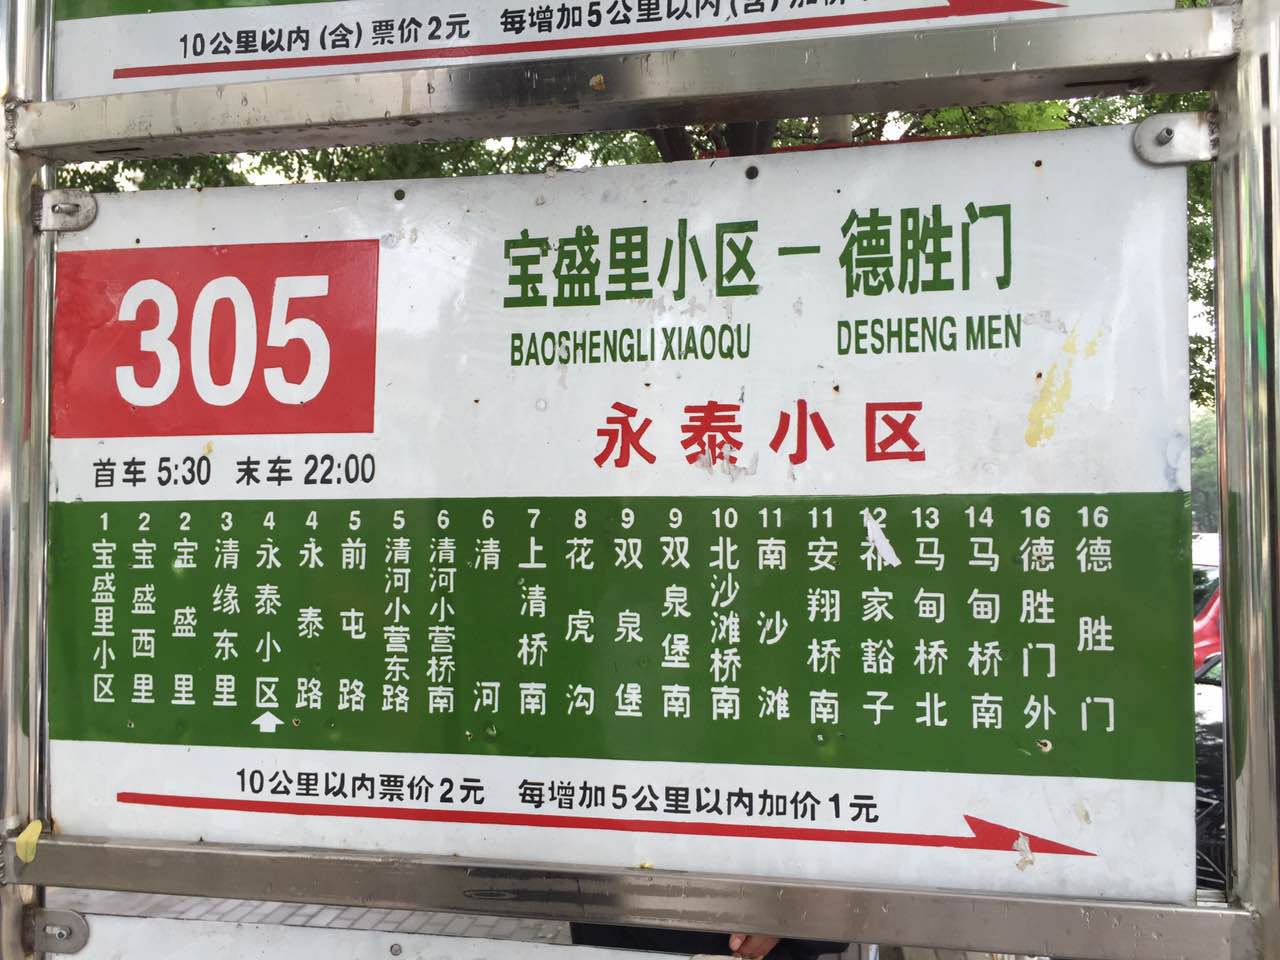 臺中智慧型公車站牌結合詩作展現風采